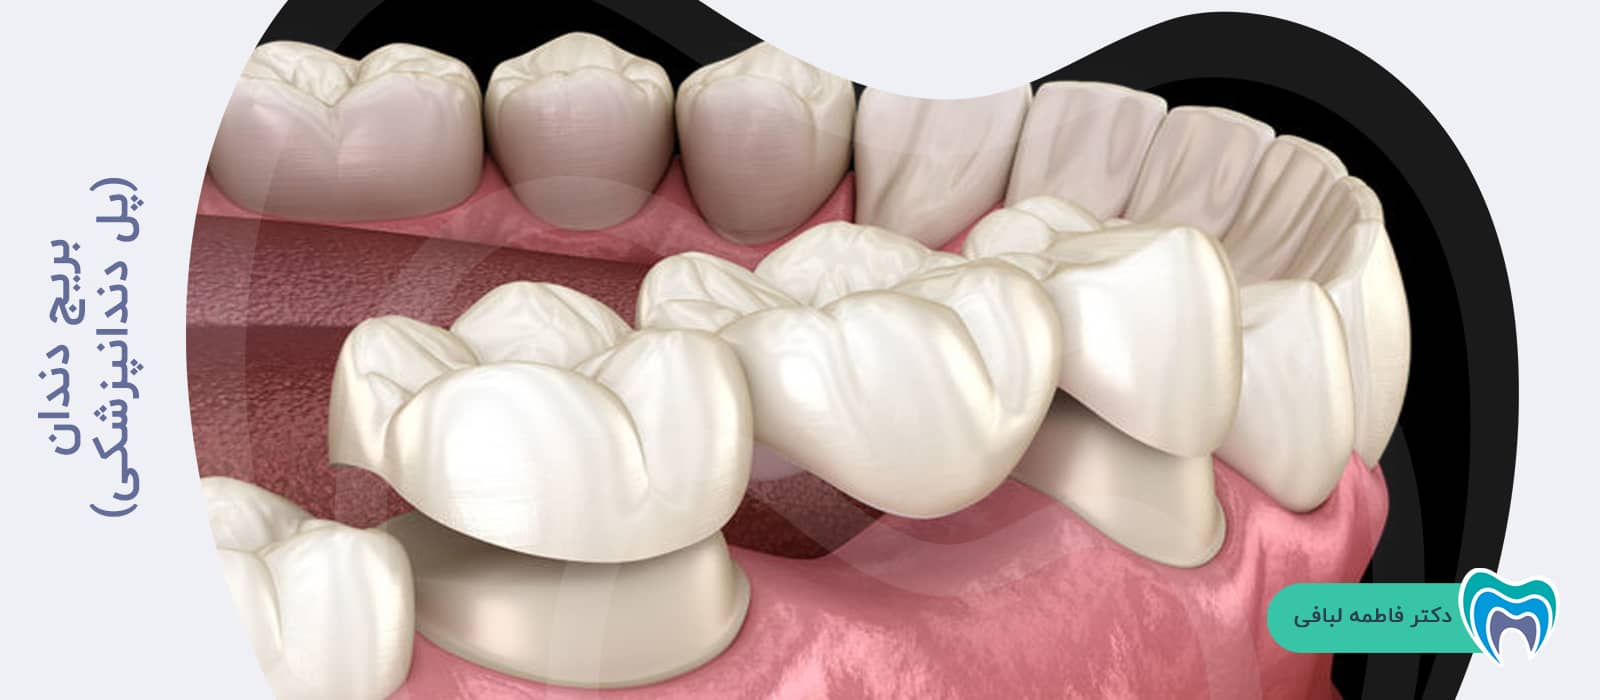 بریج دندان(پل دندانپزشکی)